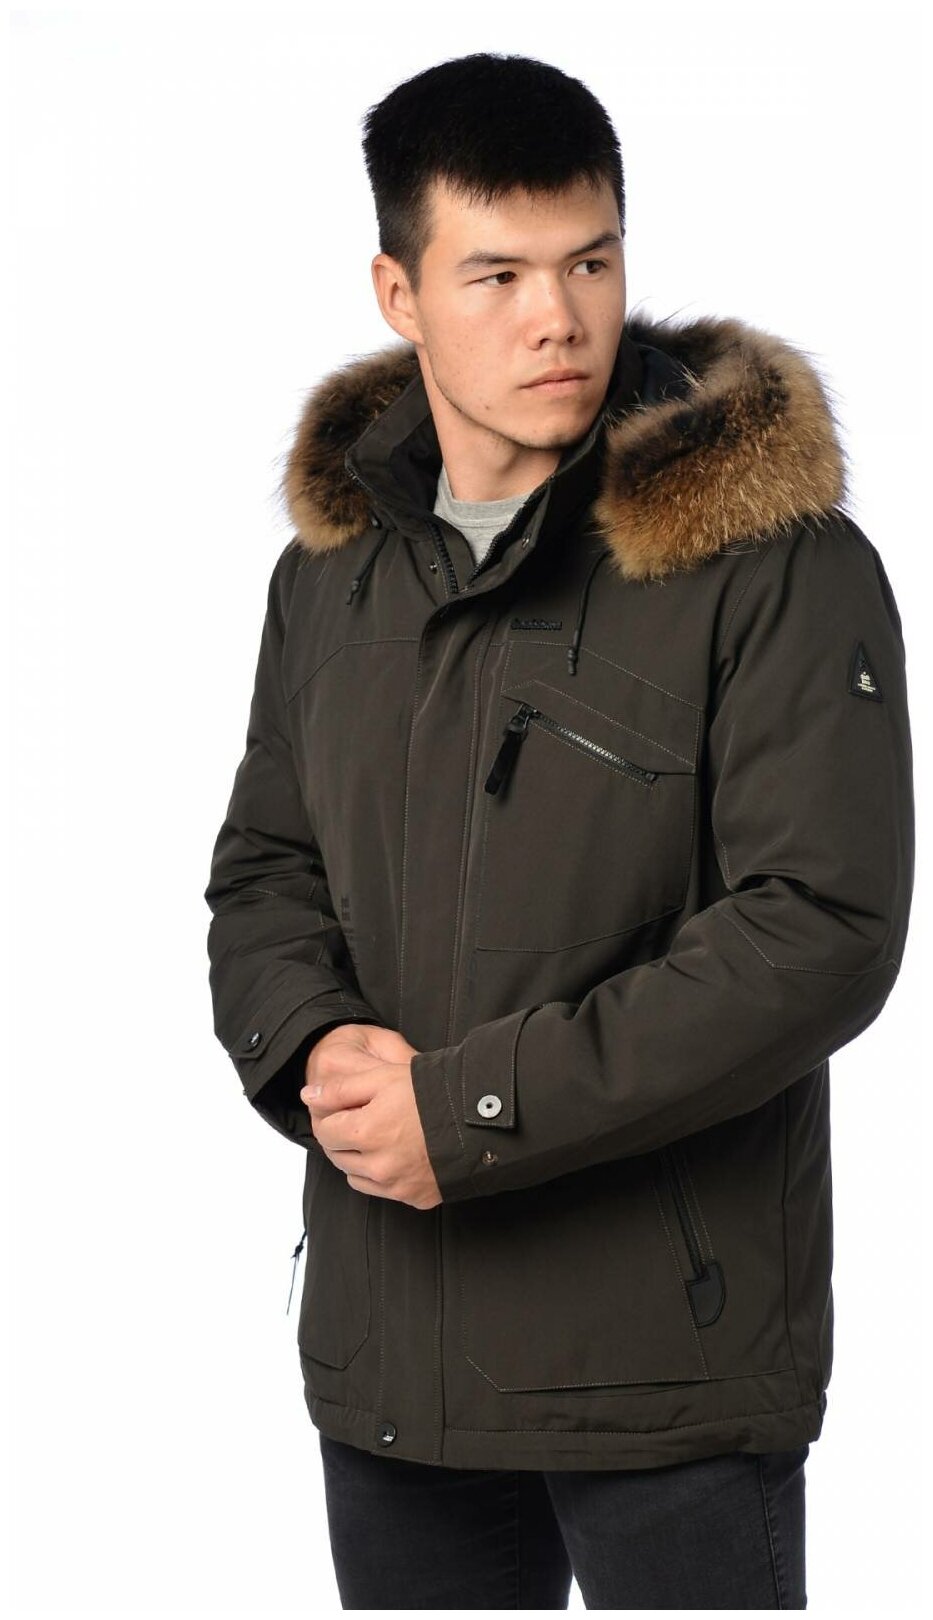 Зимняя куртка мужская SHARK FORCE 21058 размер 54 